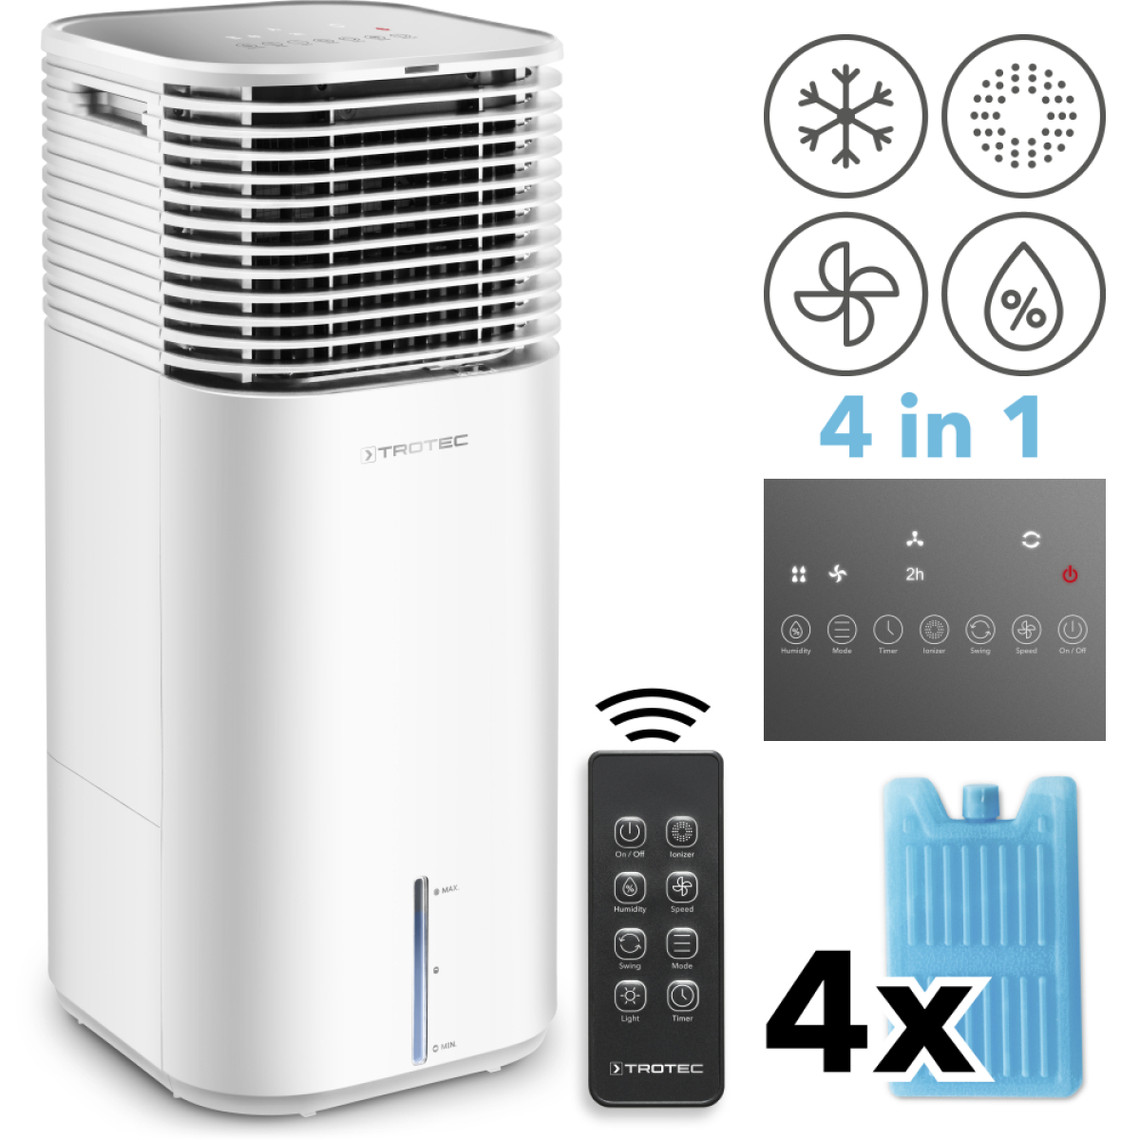 Trotec TROTEC Aircooler PAE 49 Refroidisseur d'air à évaporation 4 en 1 climatisation mobile humidificateur ventilateur